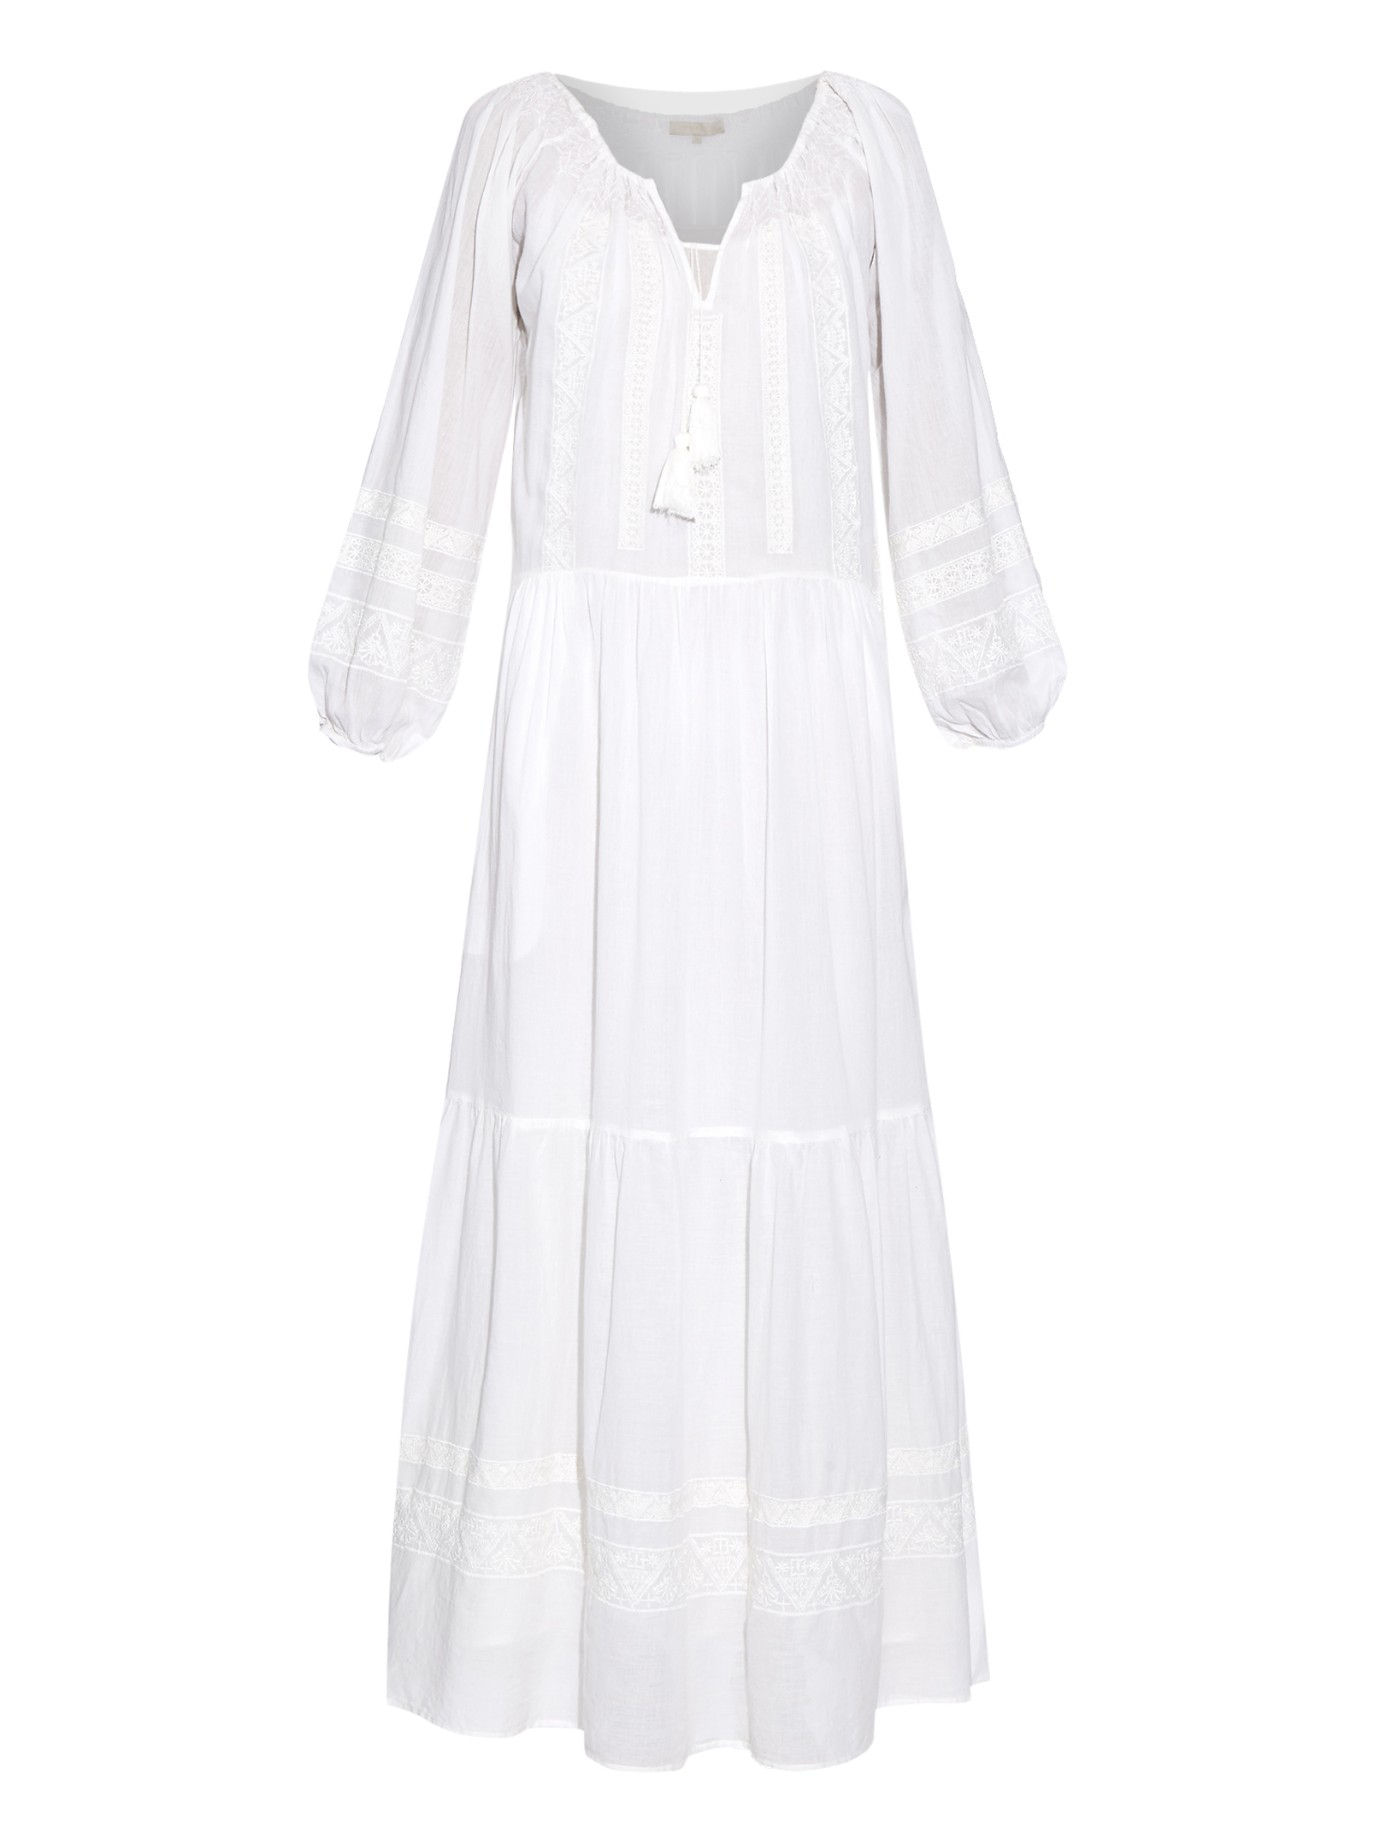 Lyst - Vanessa Bruno Daloa Embroidered Cotton Dress in White